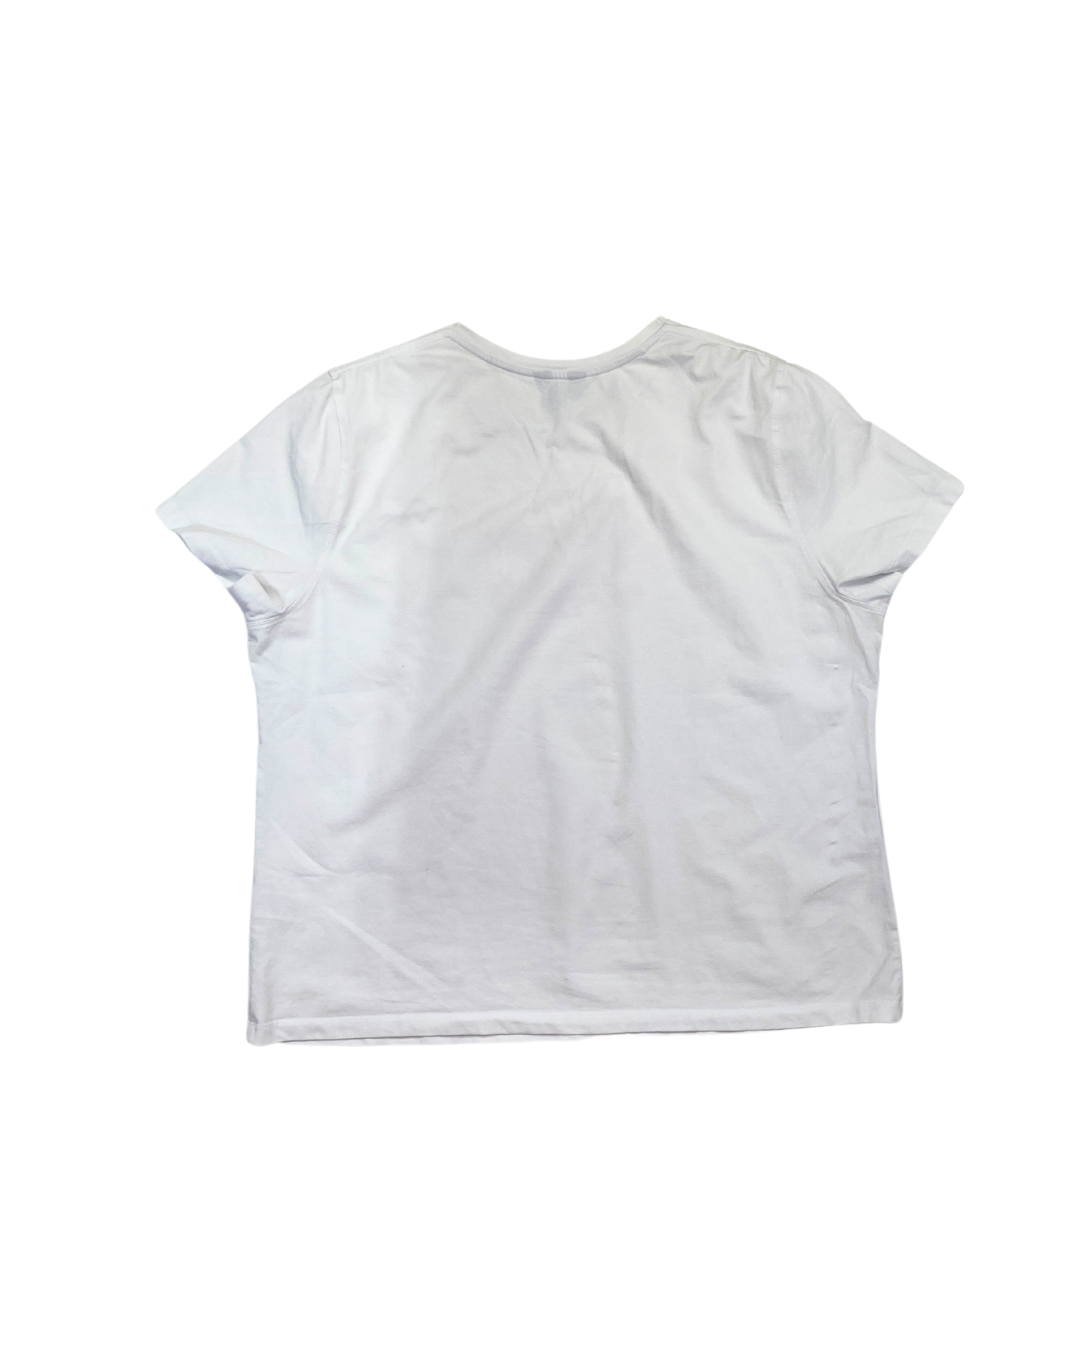 Saint and Sofia White Graphic T-Shirt